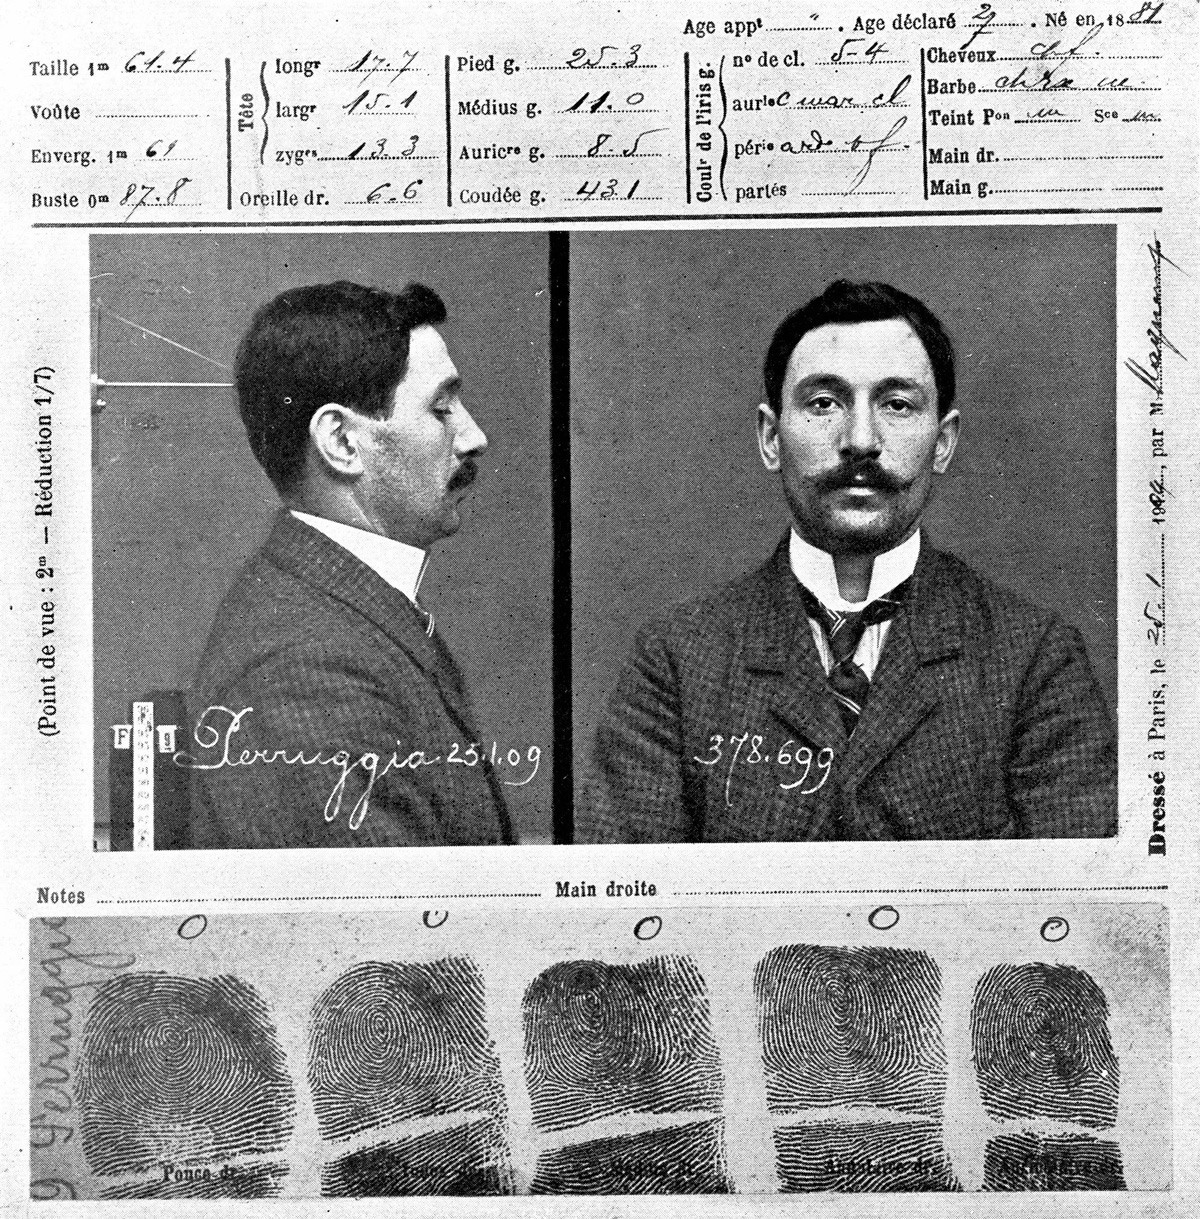 سجلات (فينسينزو بيروجيا) لدى الشرطة في سنة 1909